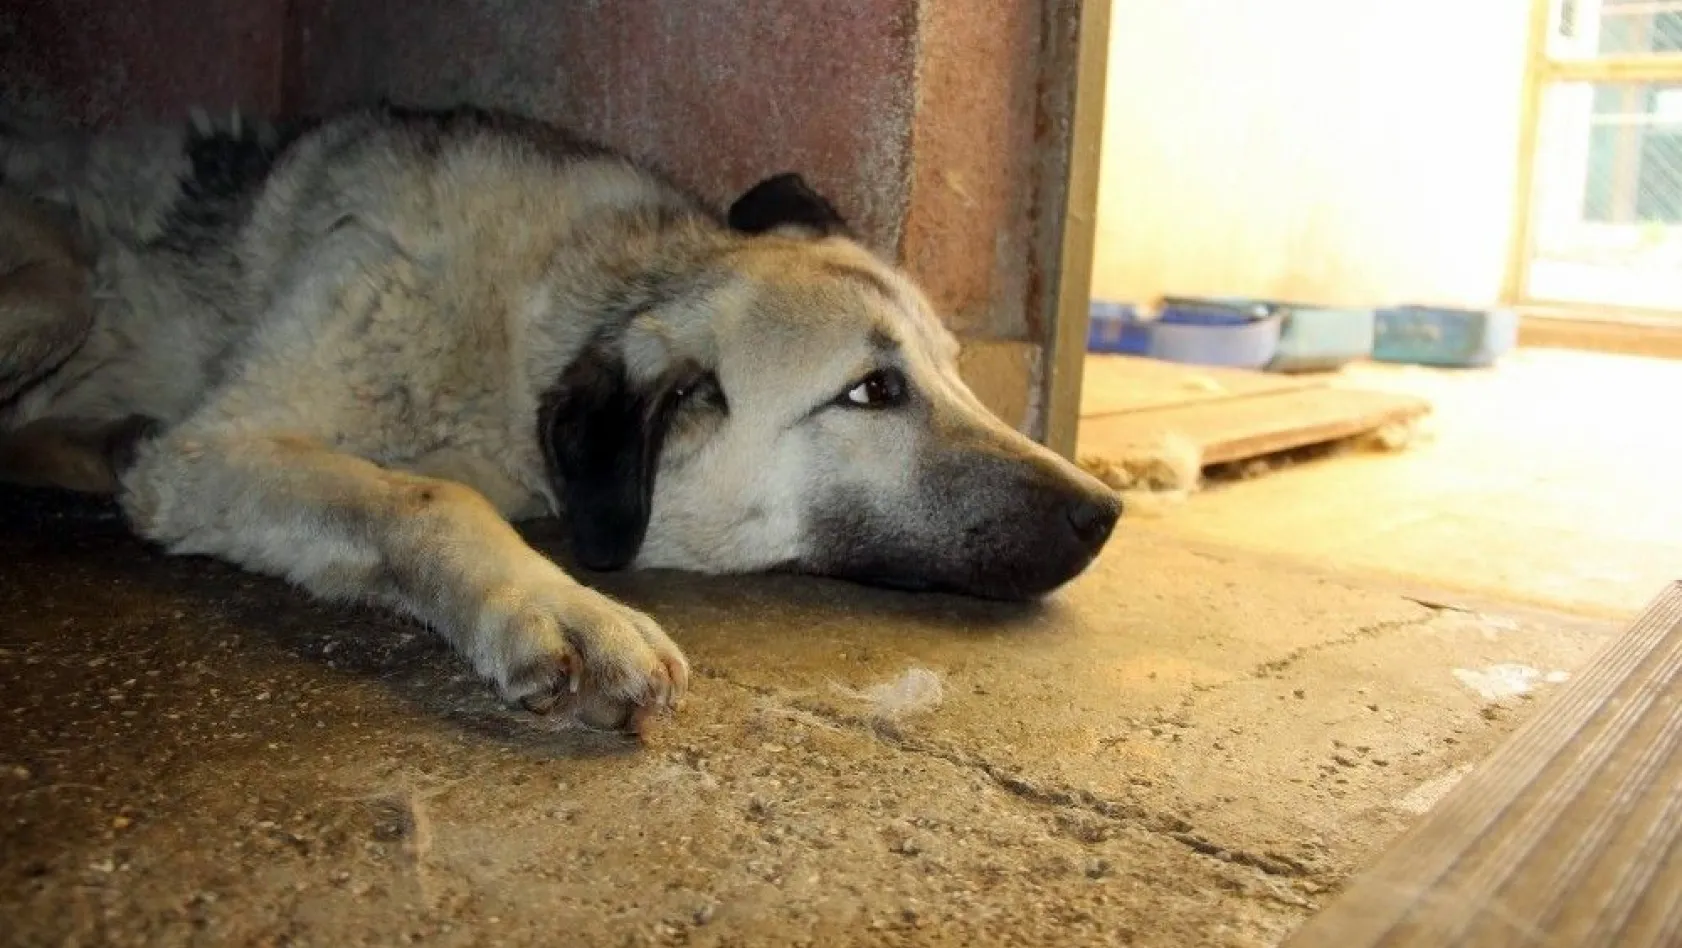 Boynuna lastik takılarak işkence edilen köpek kurtarıldı
